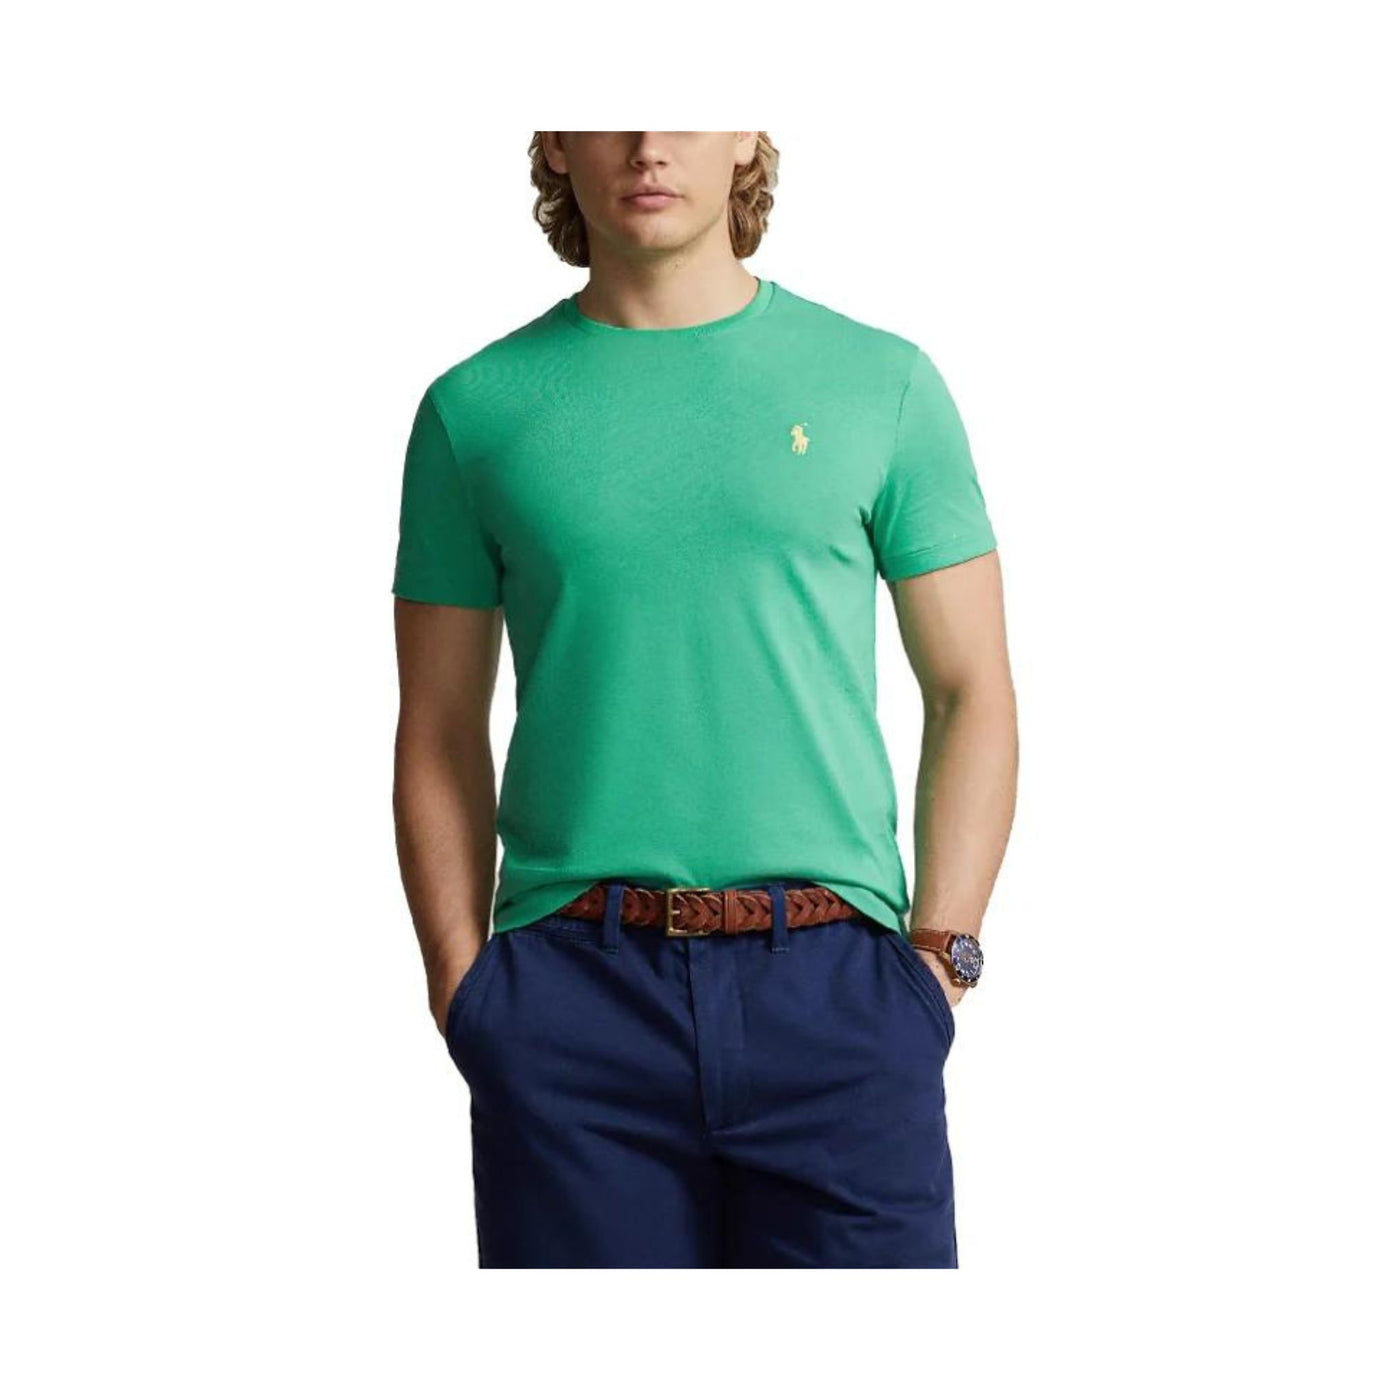 Modello con T-shirt in tinta unita verde con cavallino sul petto in contrasto